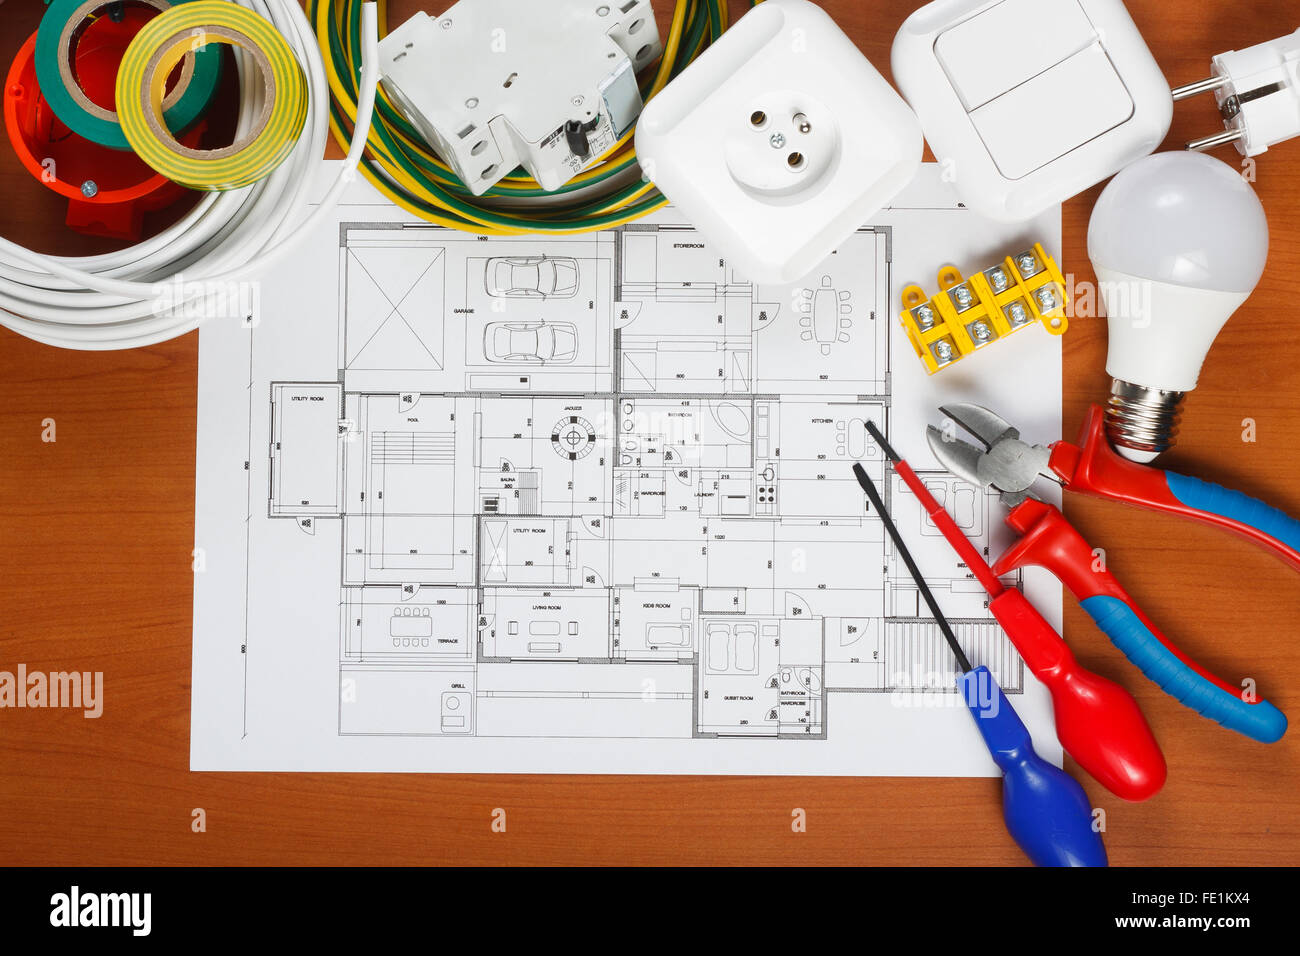 Equipo eléctrico, herramientas y planes de la casa, sobre el escritorio Foto de stock